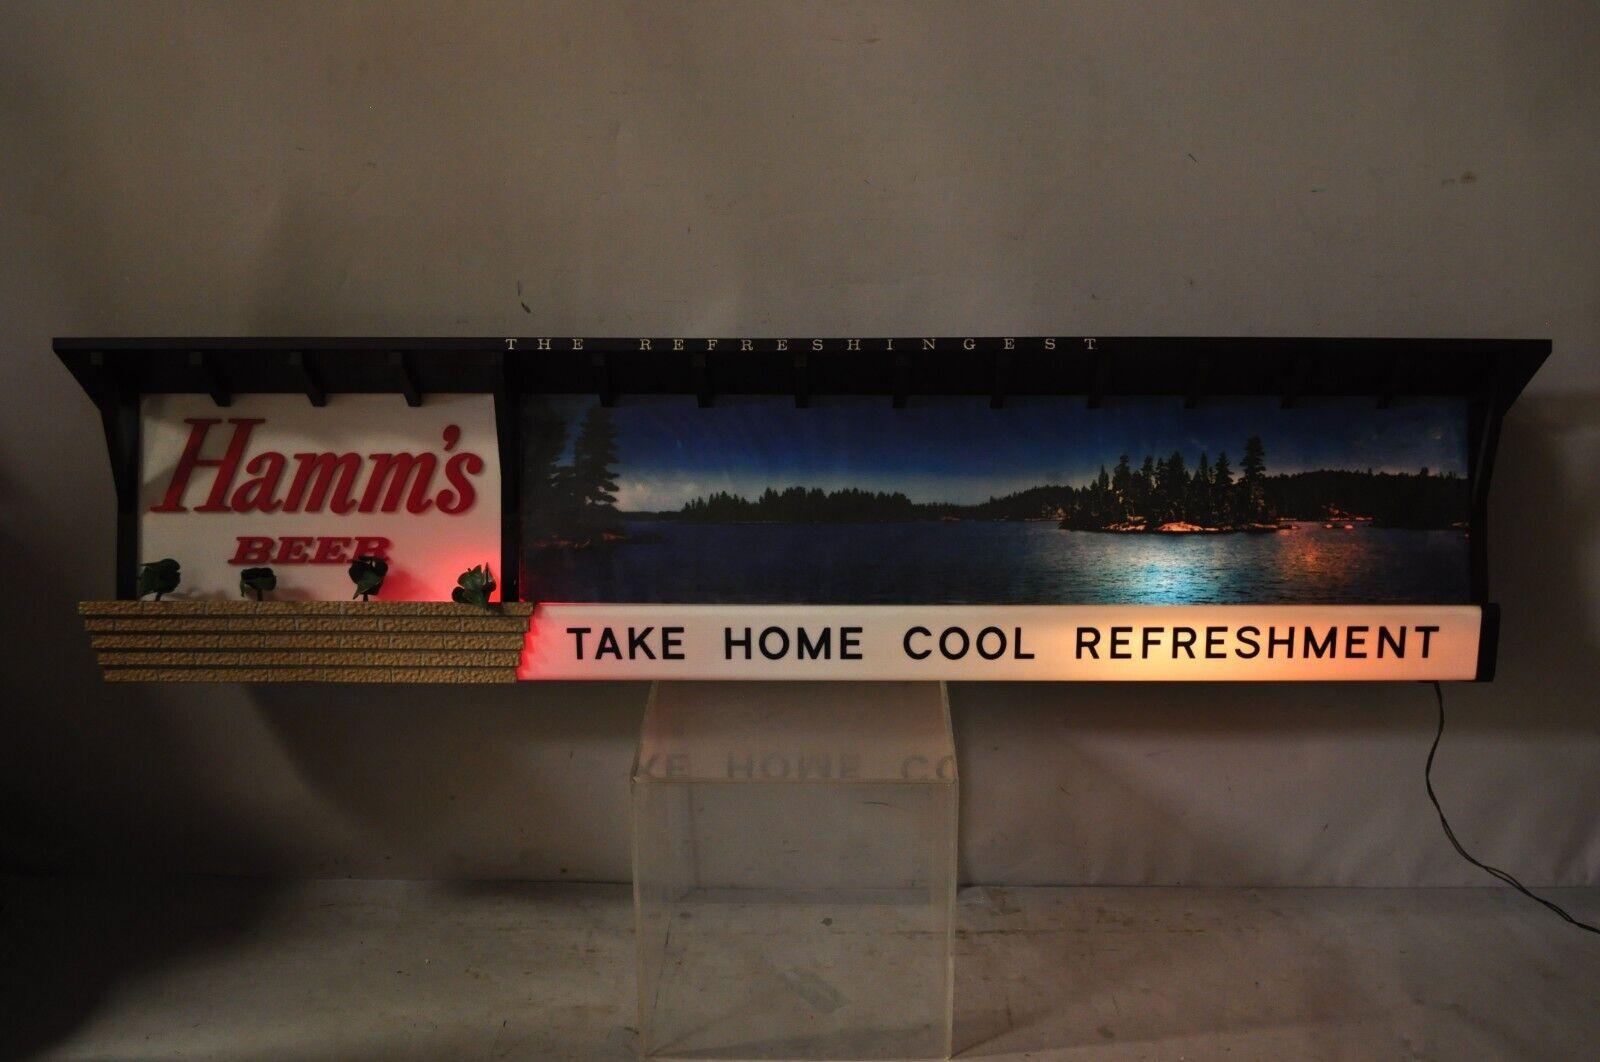 Große Vintage Hamm's Beer Lakeside Plastics Advertising Hanging Lighted Sign. Artikel verfügt über eine große beeindruckende Größe, beleuchteten Innenraum, 